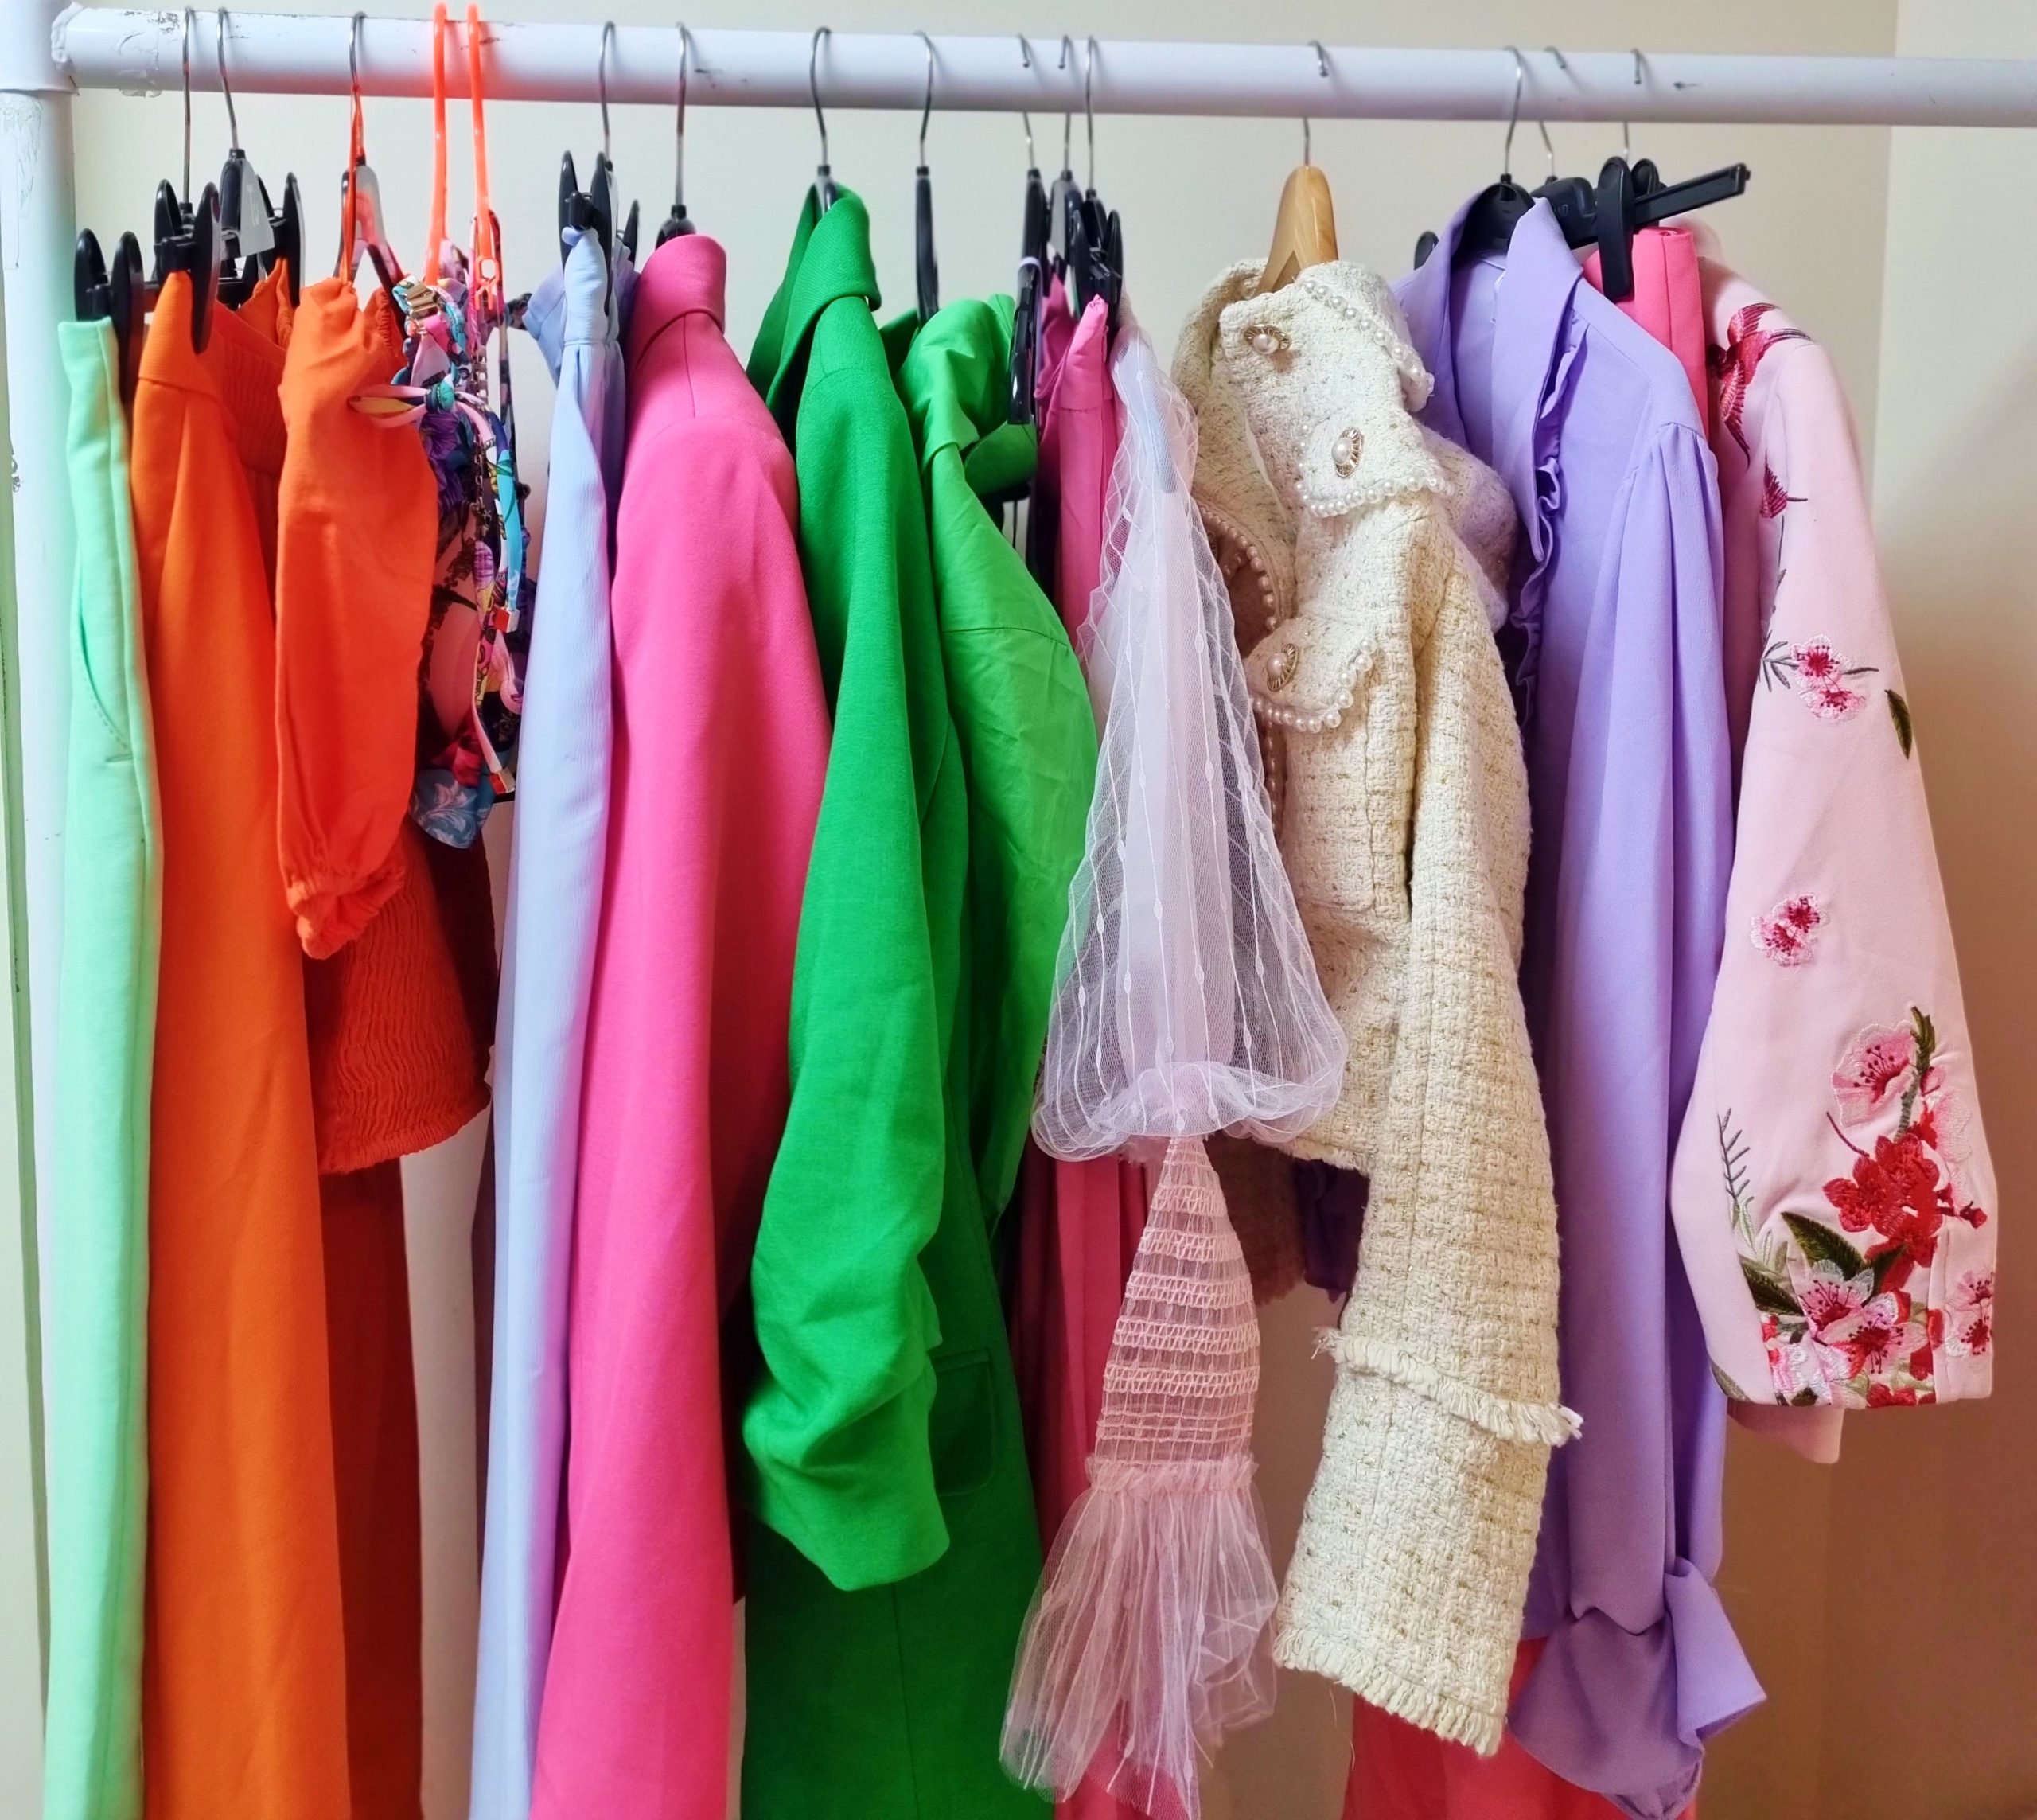 <img src="anajpg" alt="ana colourful rainbow clothes rail newlife"/> 